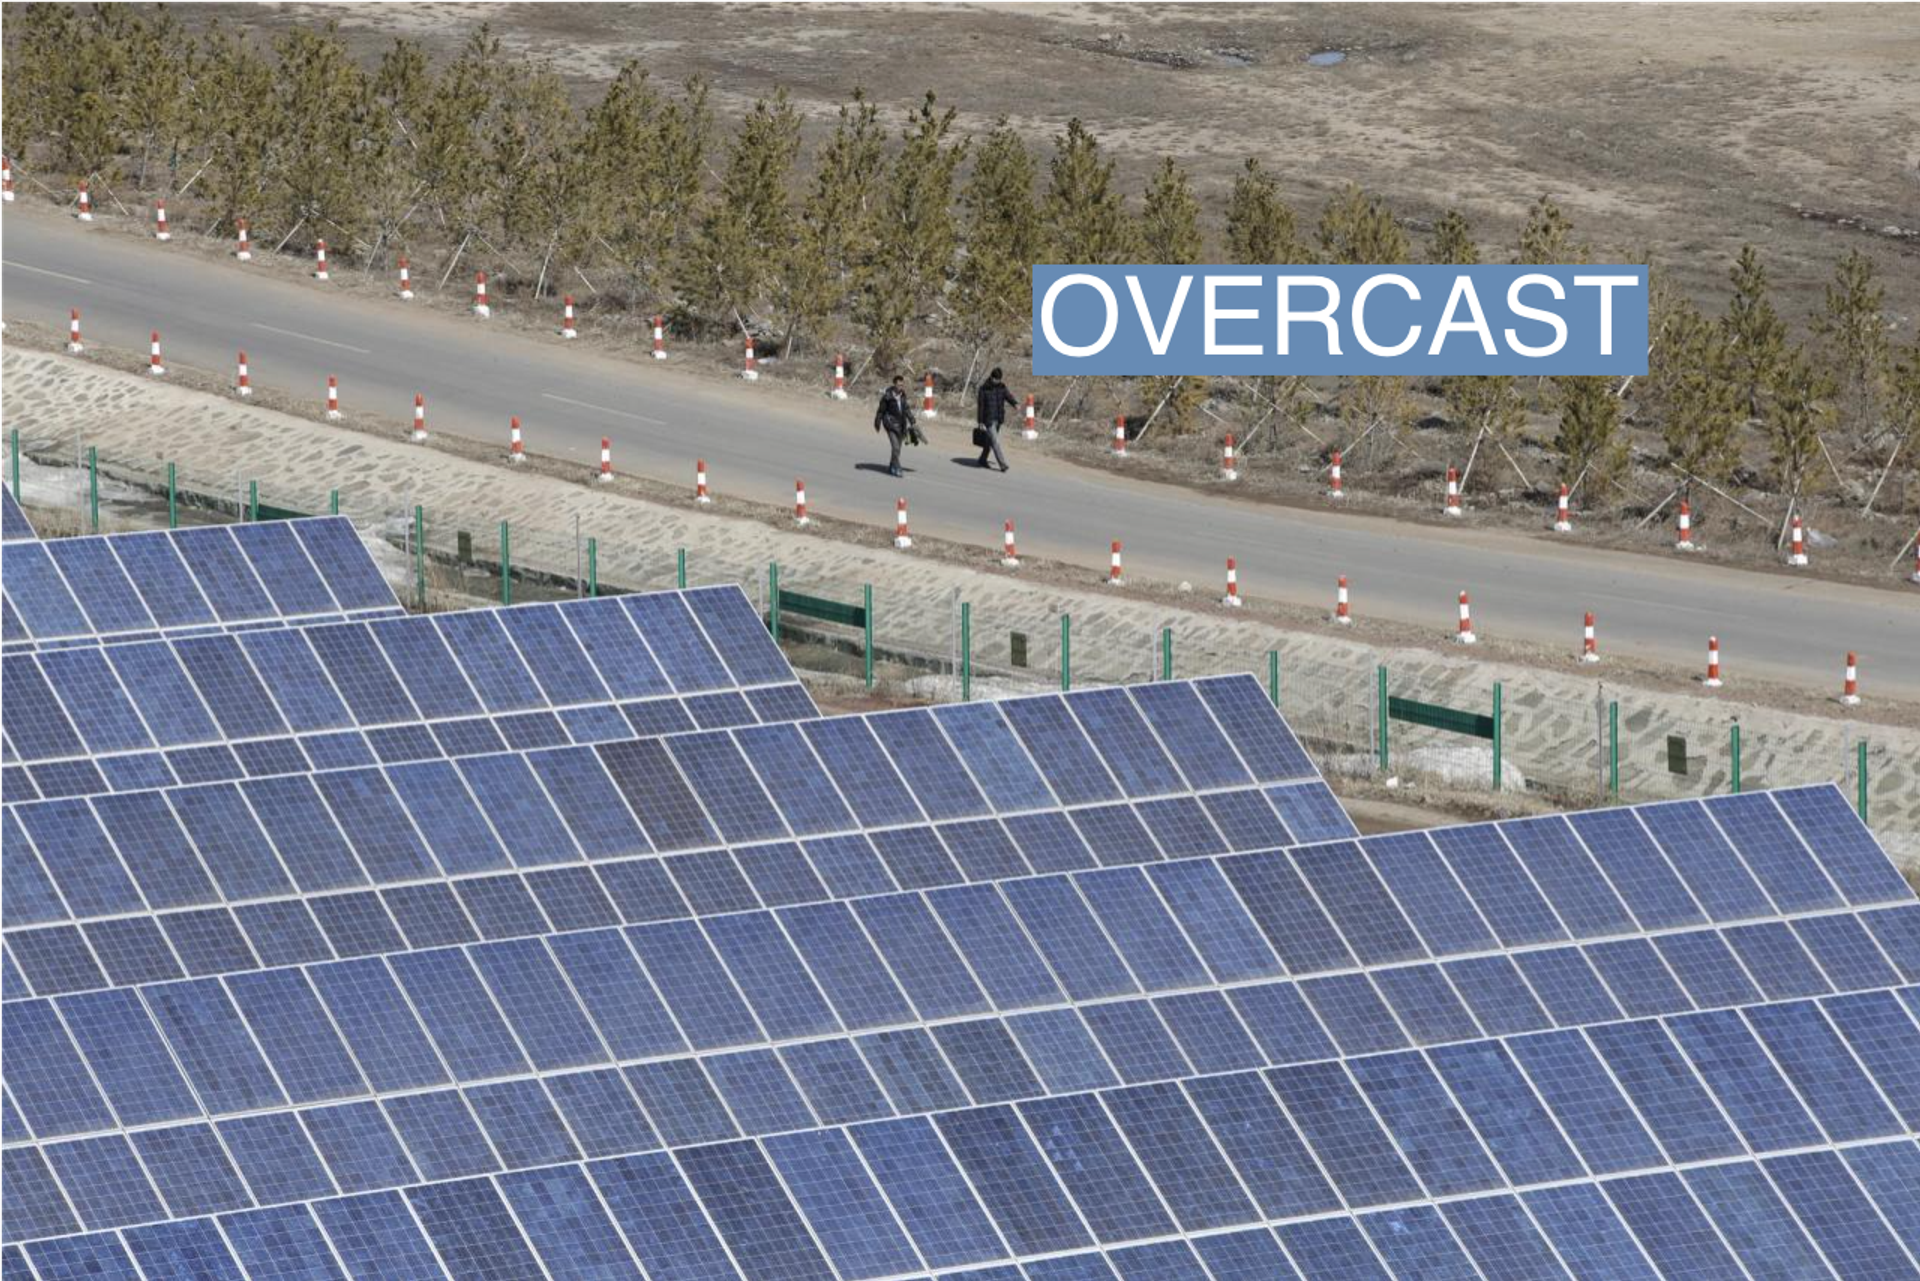 Solar panels in Hebei